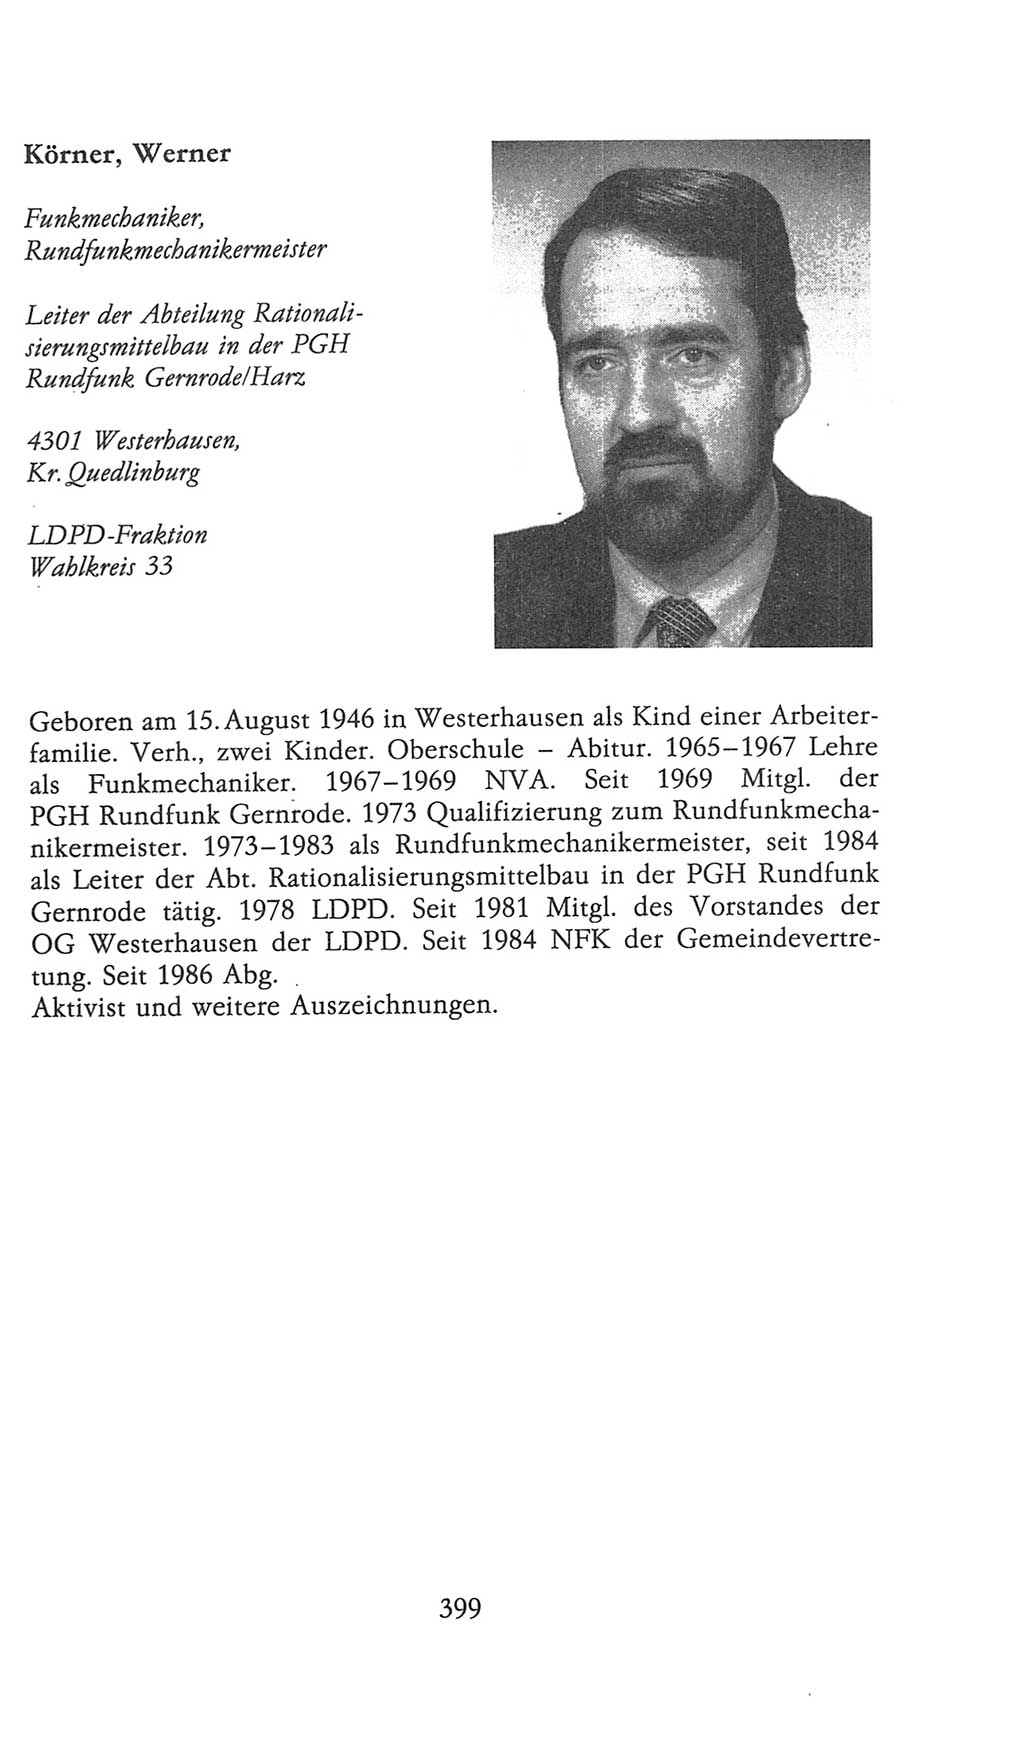 Volkskammer (VK) der Deutschen Demokratischen Republik (DDR), 9. Wahlperiode 1986-1990, Seite 399 (VK. DDR 9. WP. 1986-1990, S. 399)